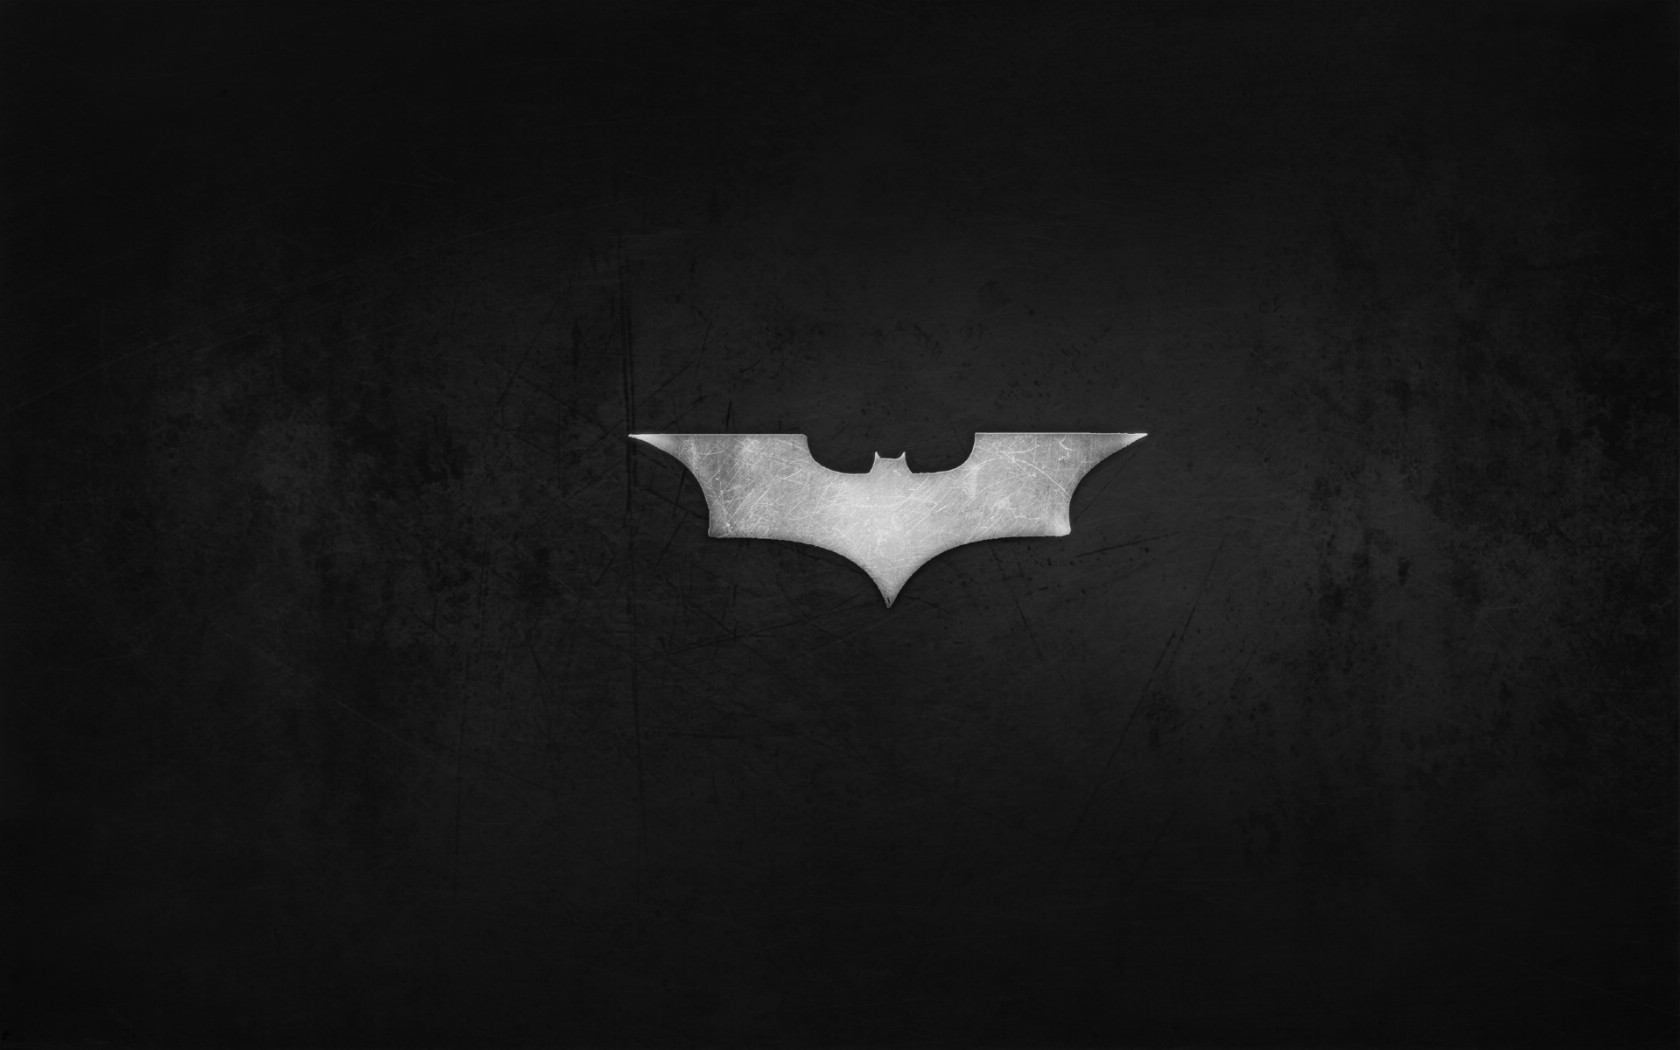 壁纸1680x1050蝙蝠侠 宽屏 桌酷精选一图 壁纸4壁纸 蝙蝠侠（宽屏）精壁纸 蝙蝠侠（宽屏）精图片 蝙蝠侠（宽屏）精素材 精选壁纸 精选图库 精选图片素材桌面壁纸